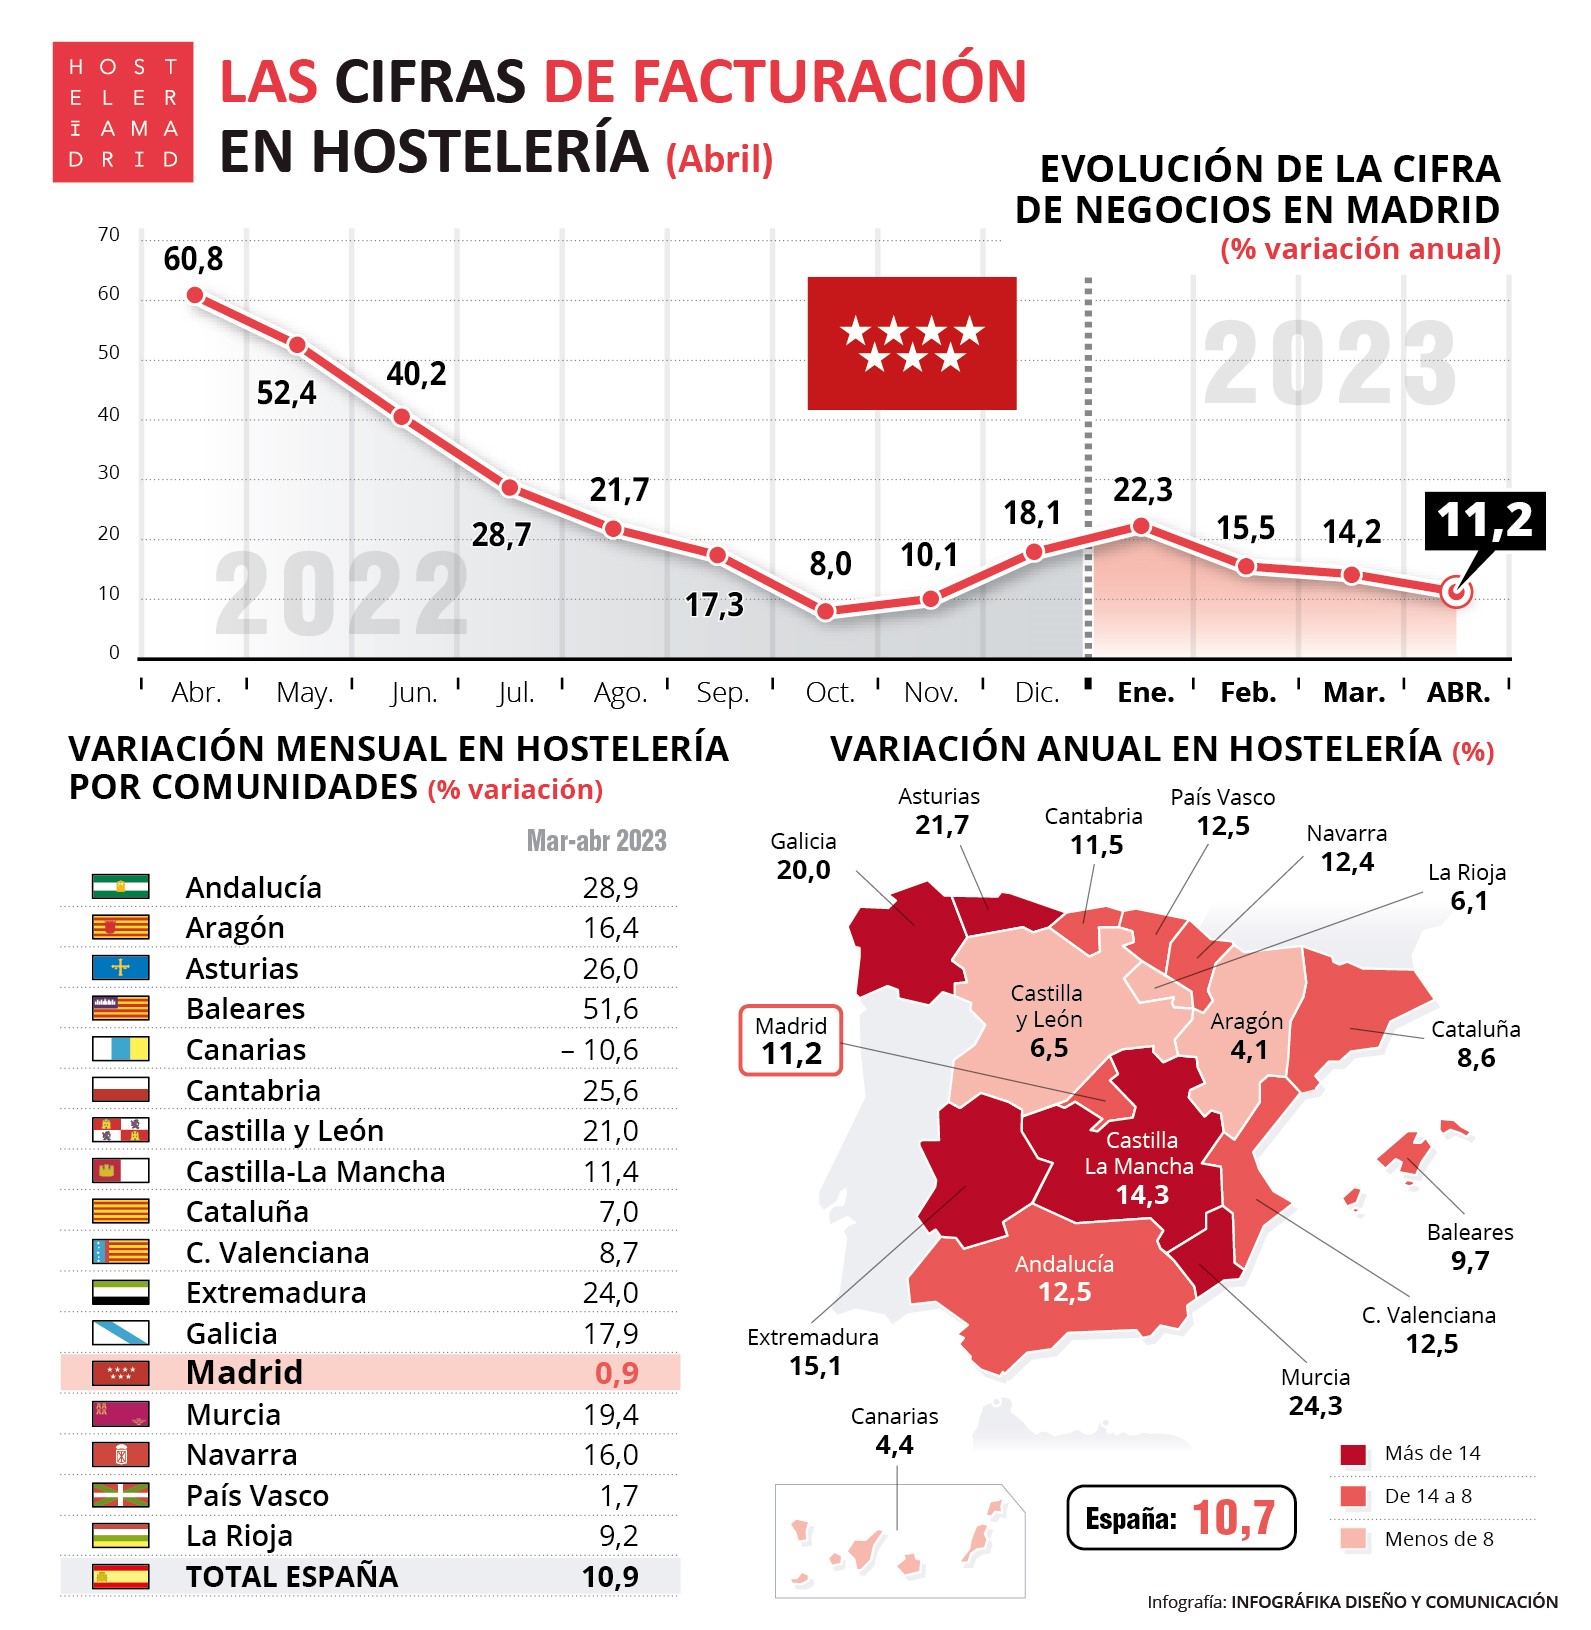 La hostelería de Madrid factura en abril un 11,2% más que el año anterior - La Viña